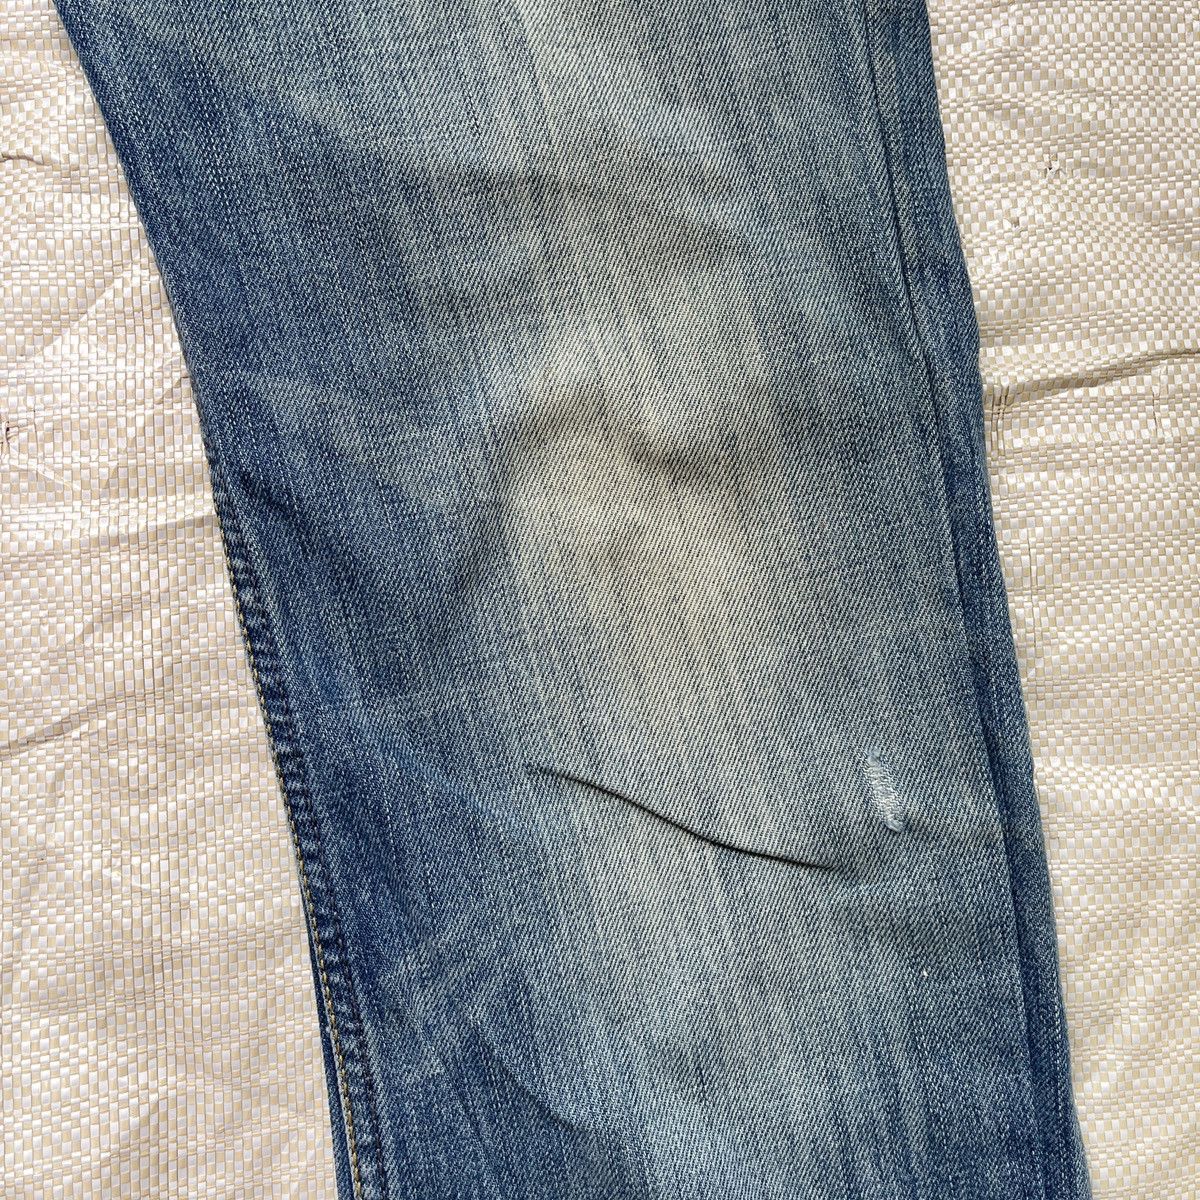 Distressed Diesel Black Zatiny Denim Jeans Made In Italy - 15